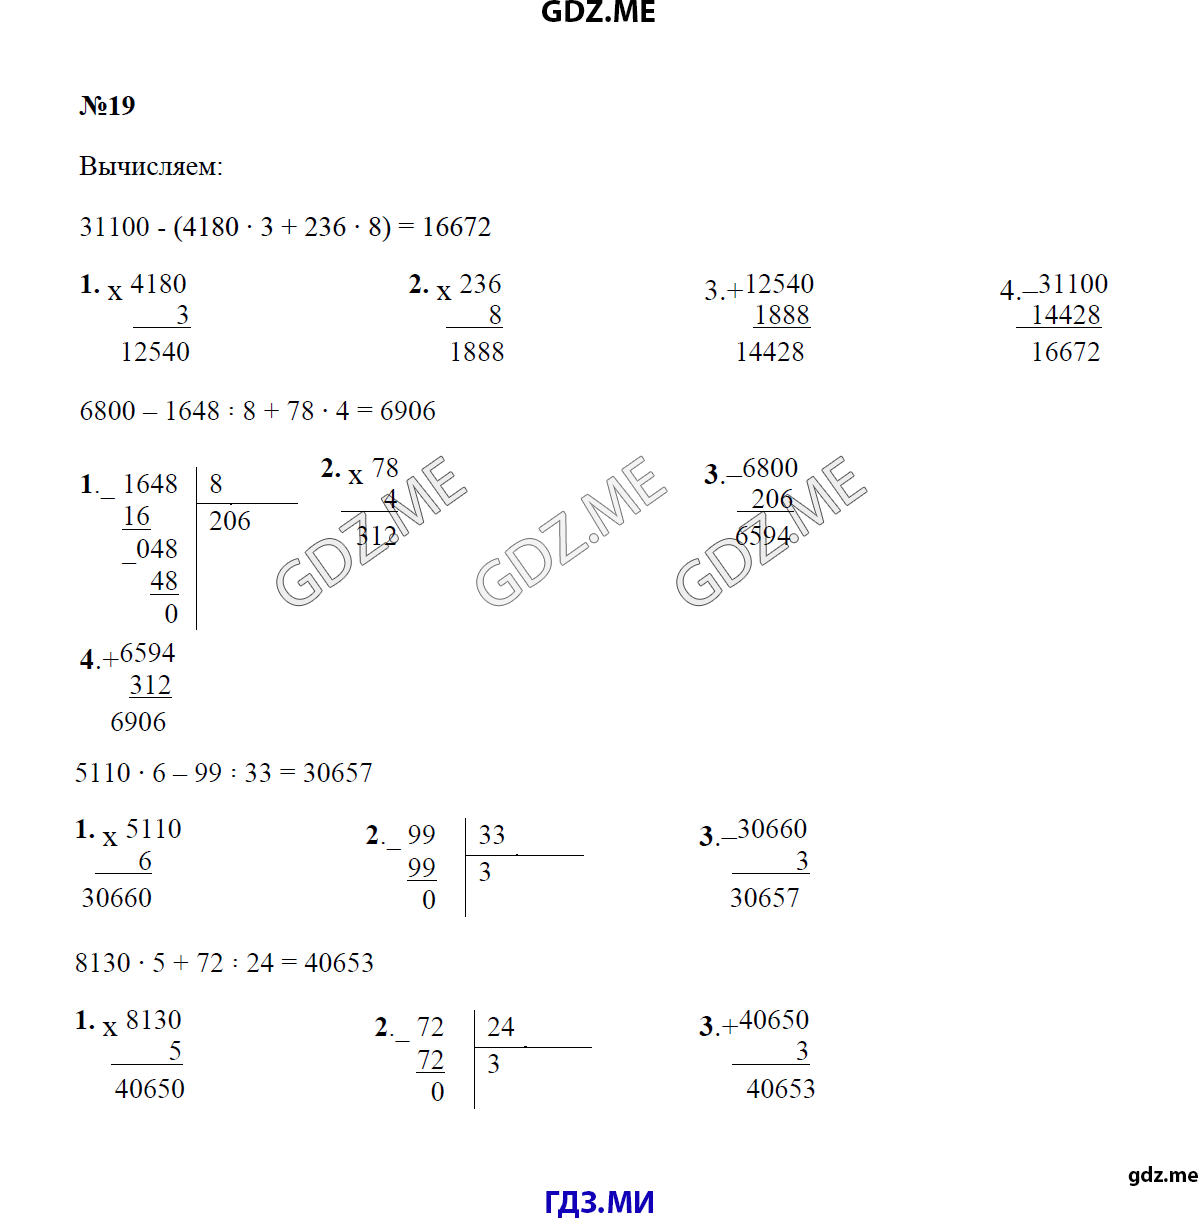 Страница (упражнение) 19 учебника. Ответ на вопрос упражнения 19 ГДЗ решебник по математике 4 класс Моро